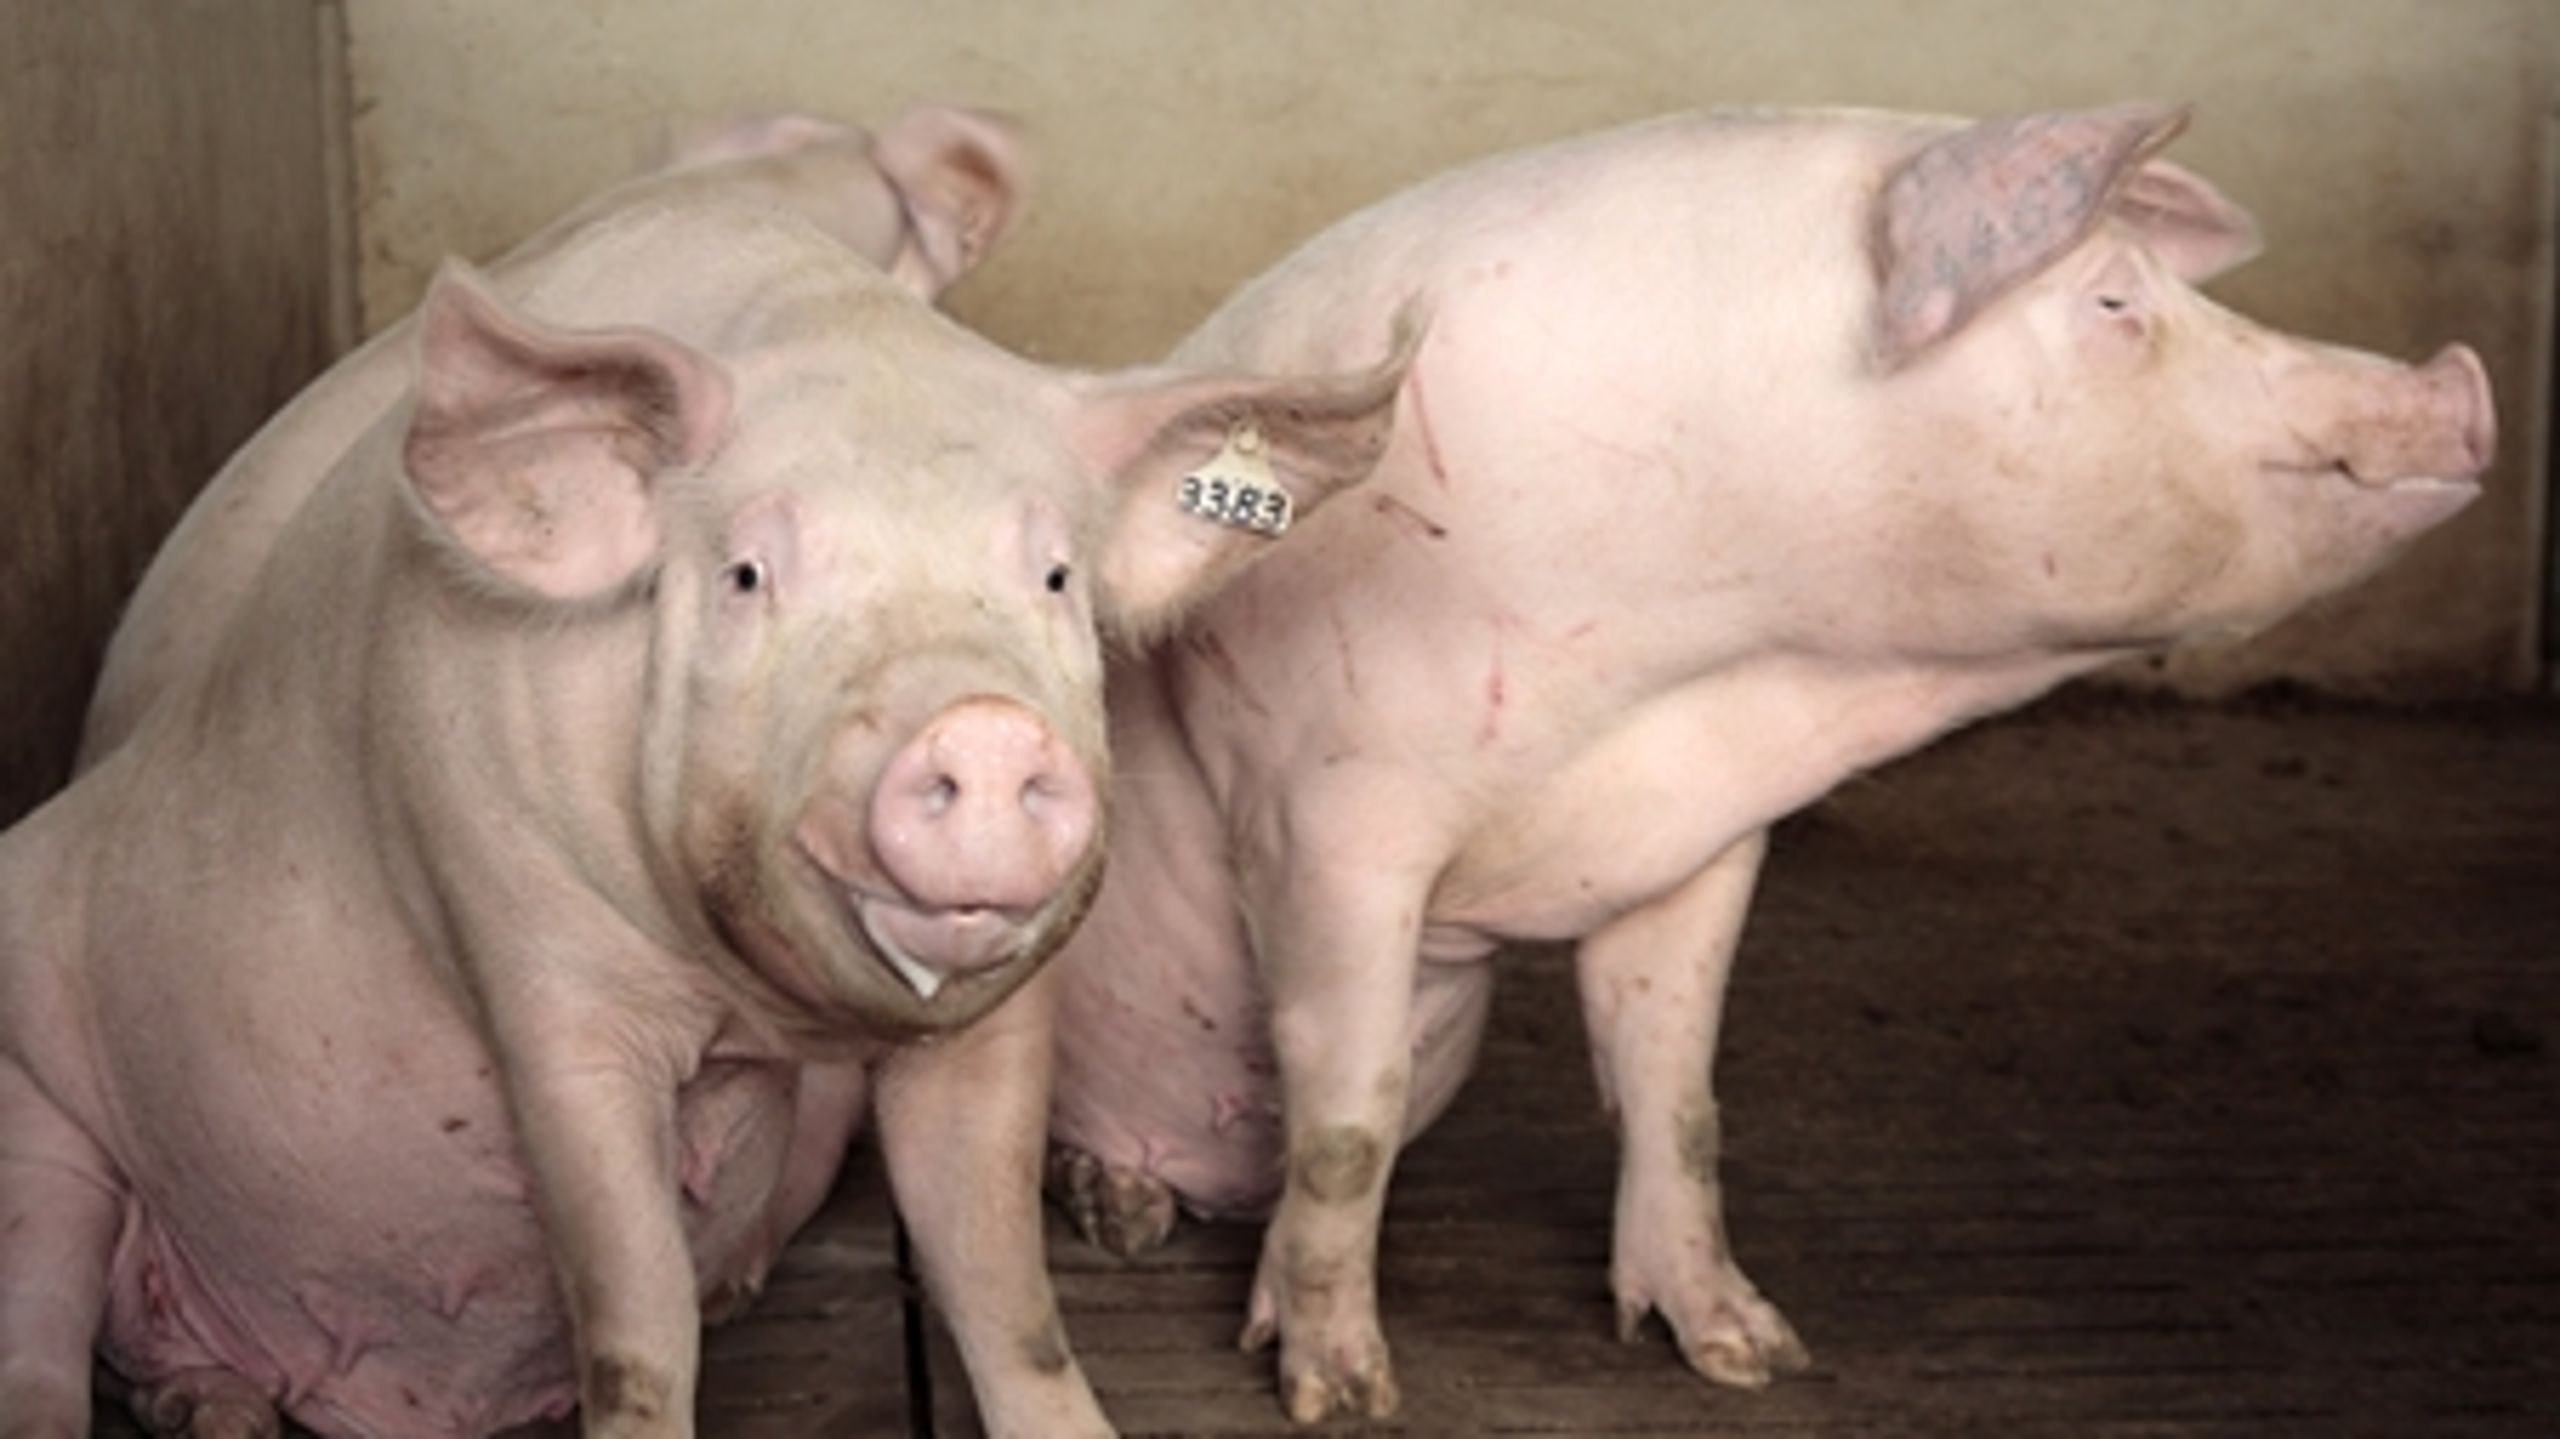 Forbruget af antibiotika til svin er faldet med 25 procent i forhold til samme kvartal sidste år. Den Danske Dyrlægeforening mener dog, at tallene bør undersøges nærmere.